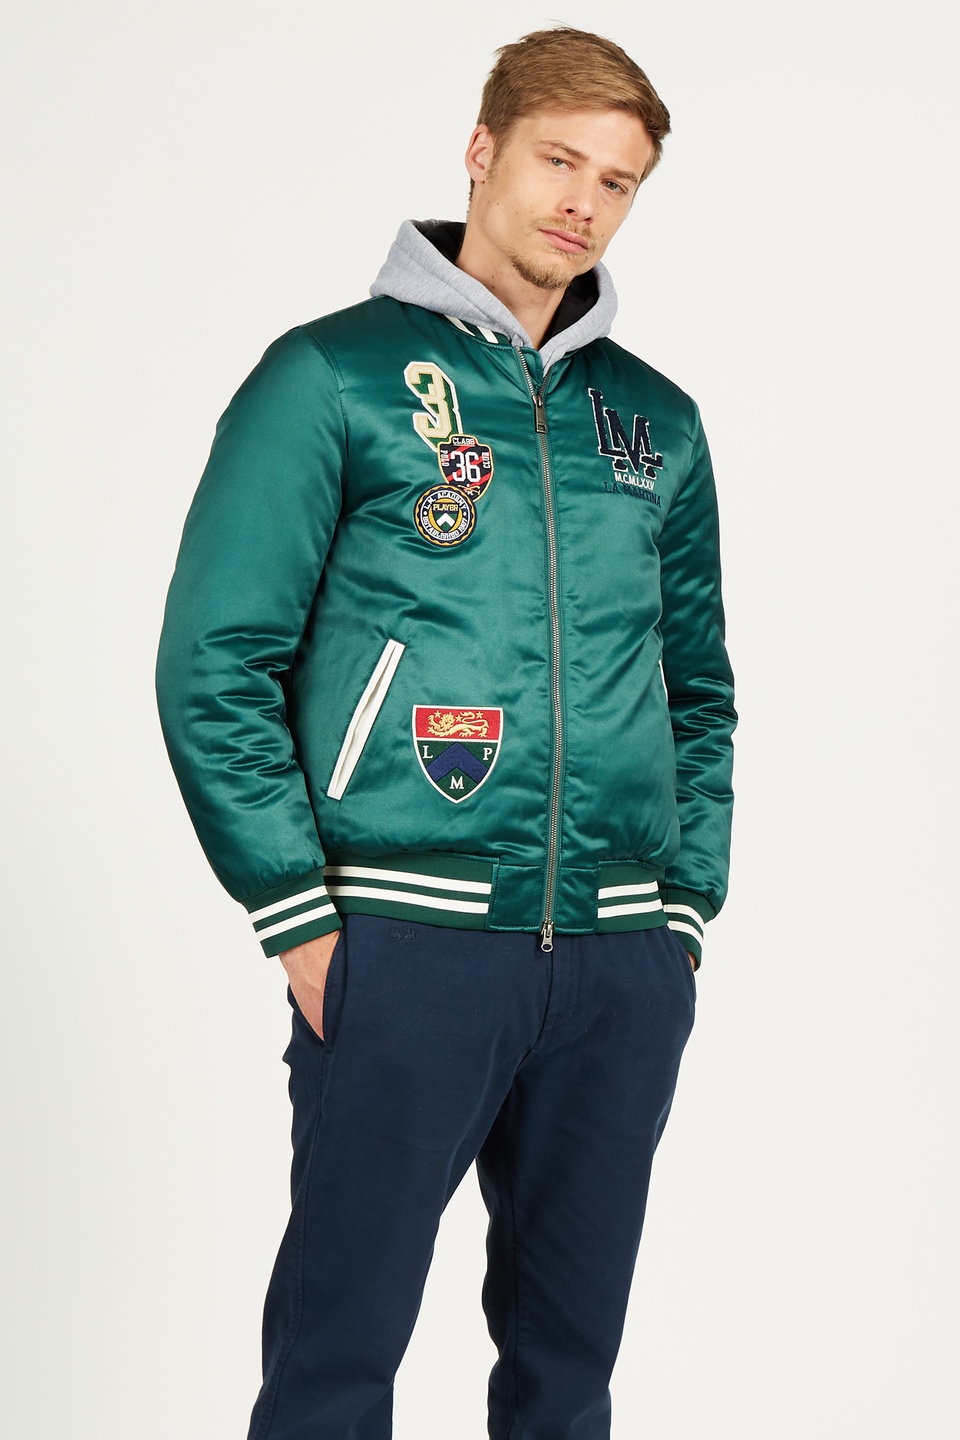 Men's bomber jacket in satin effect cotton blend, regular fit | La Martina - Official Online Shop